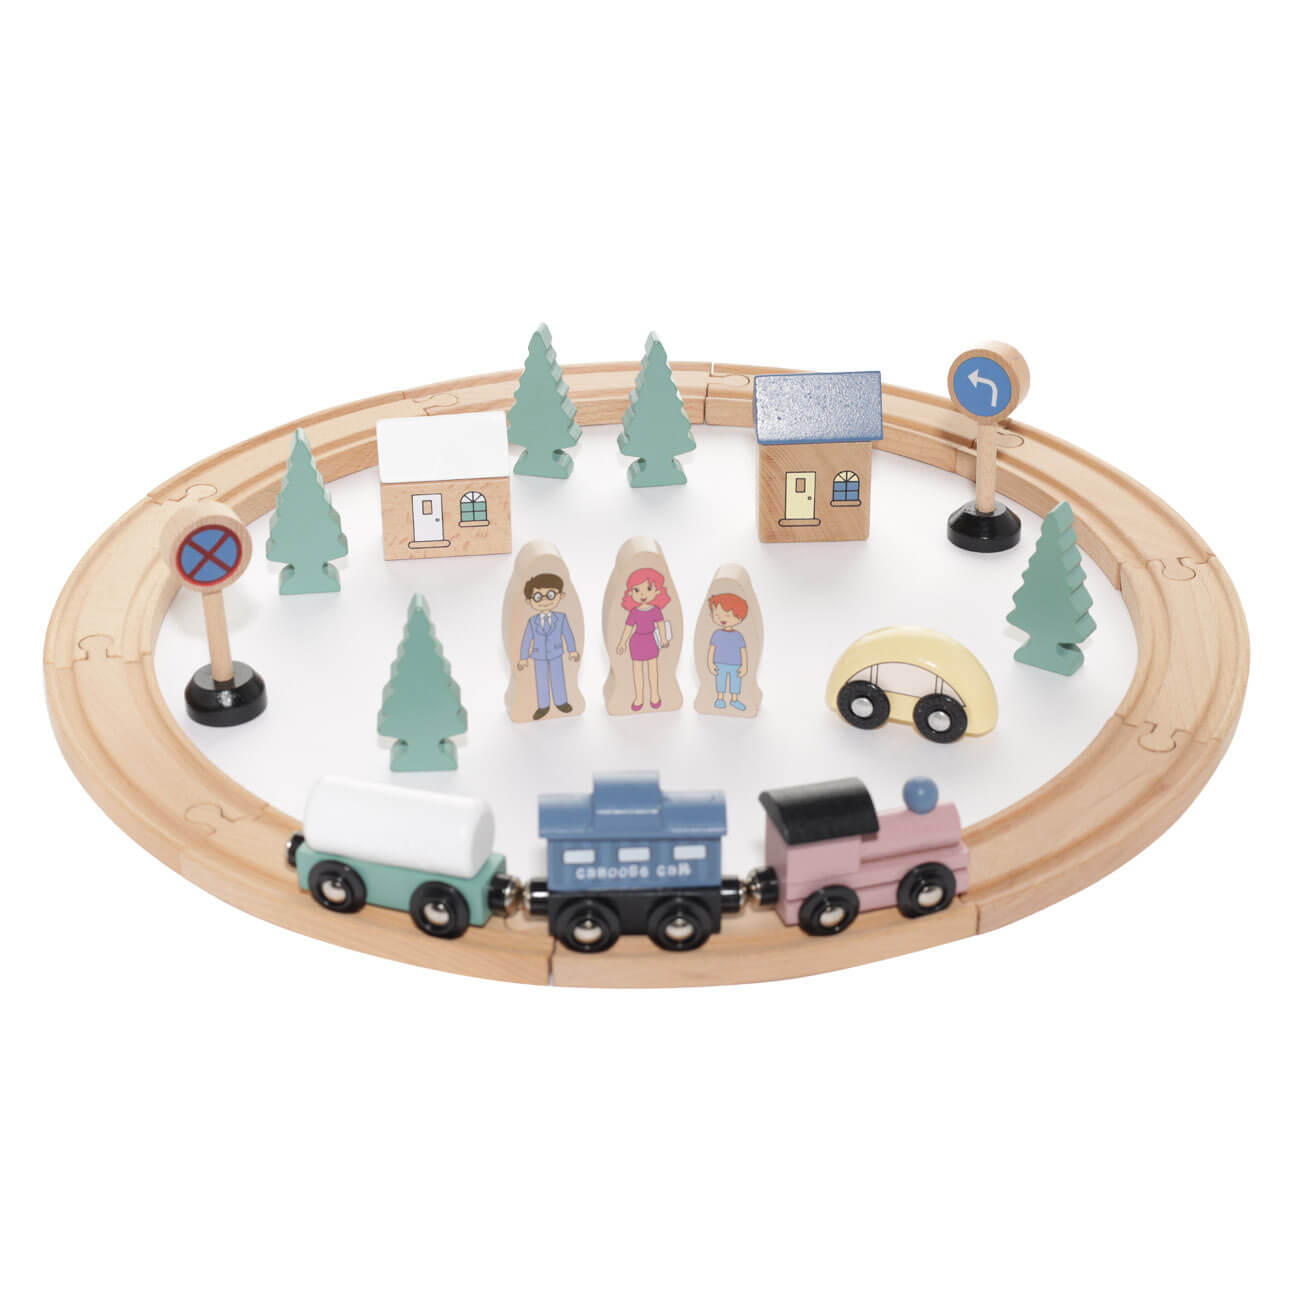 Железная дорога игрушечная, 28 см, дерево, Город, Game железная пята роман повесть рассказы